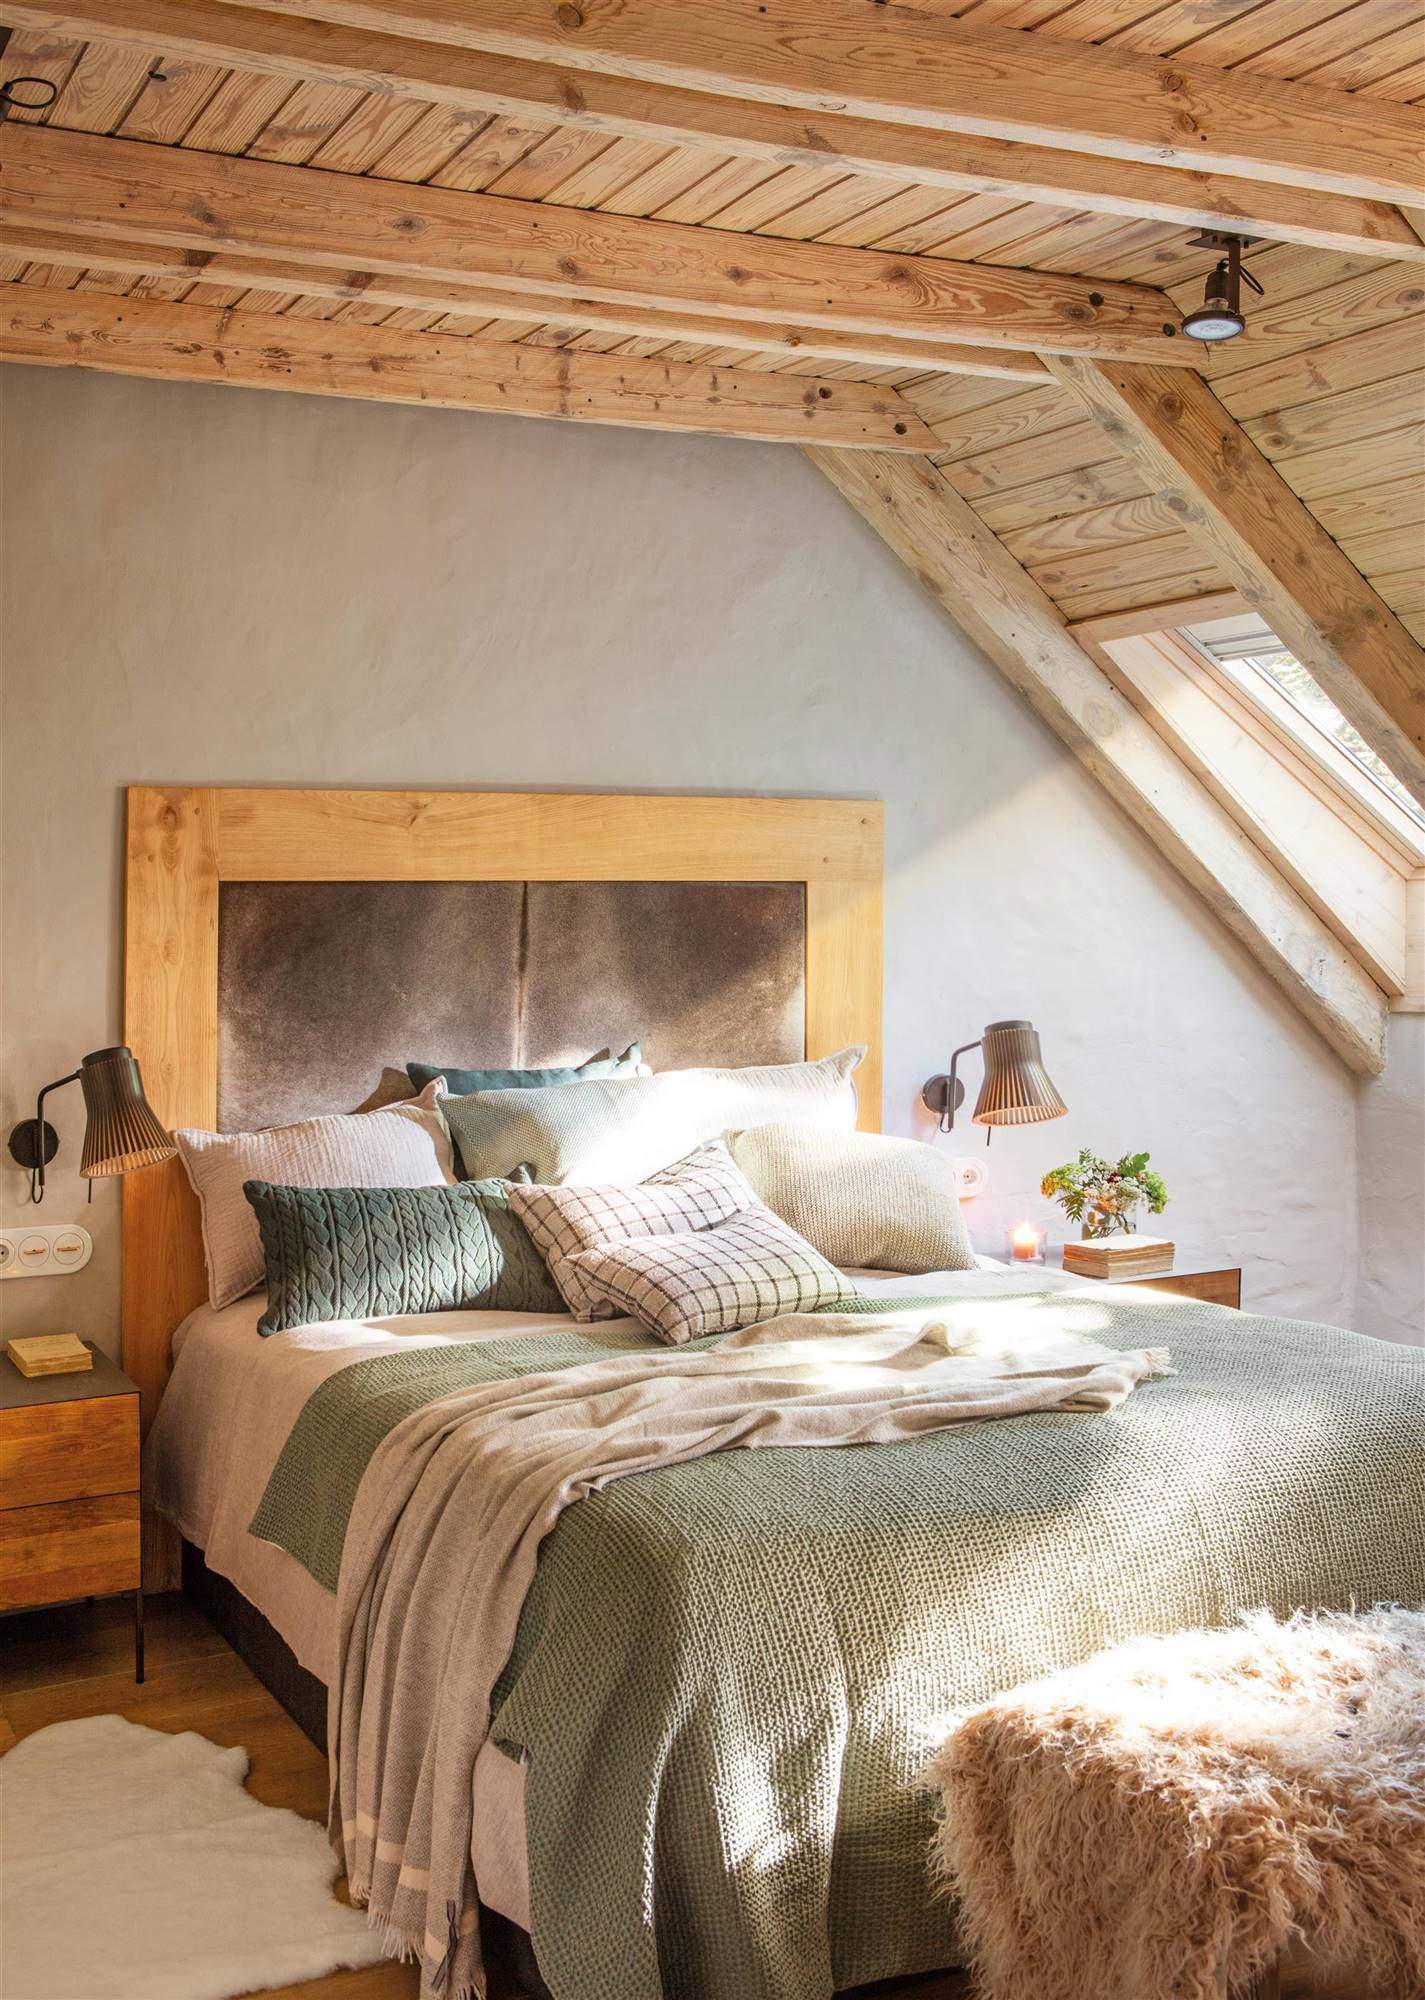 Dormitorio con techo de madera abuhardillado, cabecero de cuero y cojines verdes